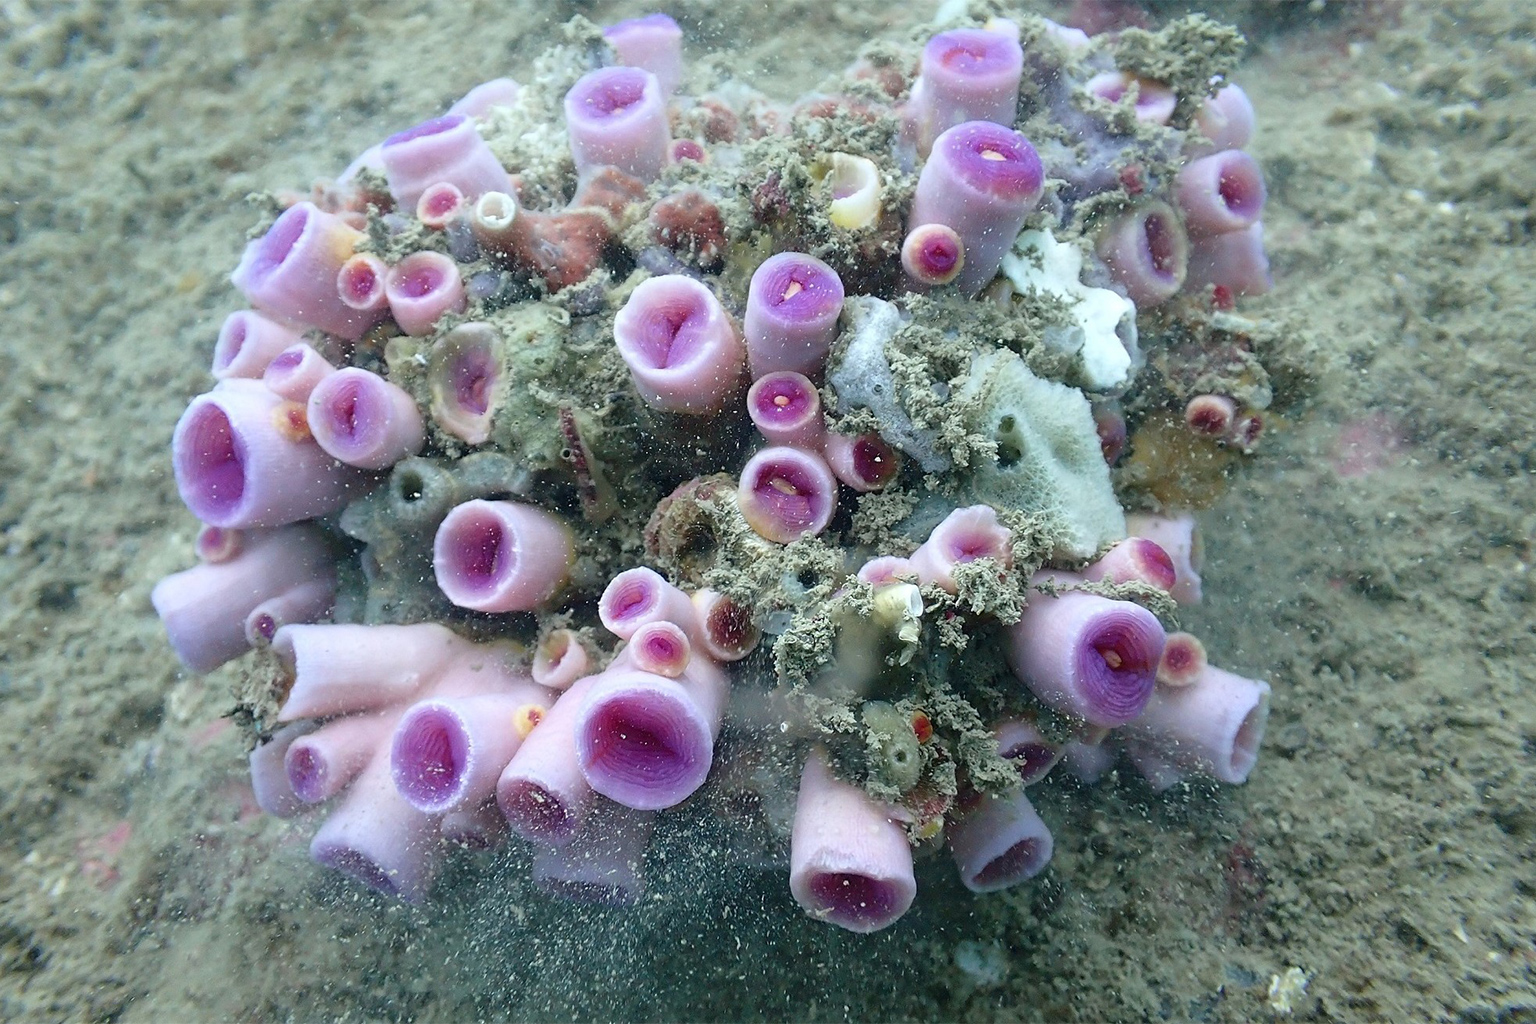 Tubastraea violacea coral